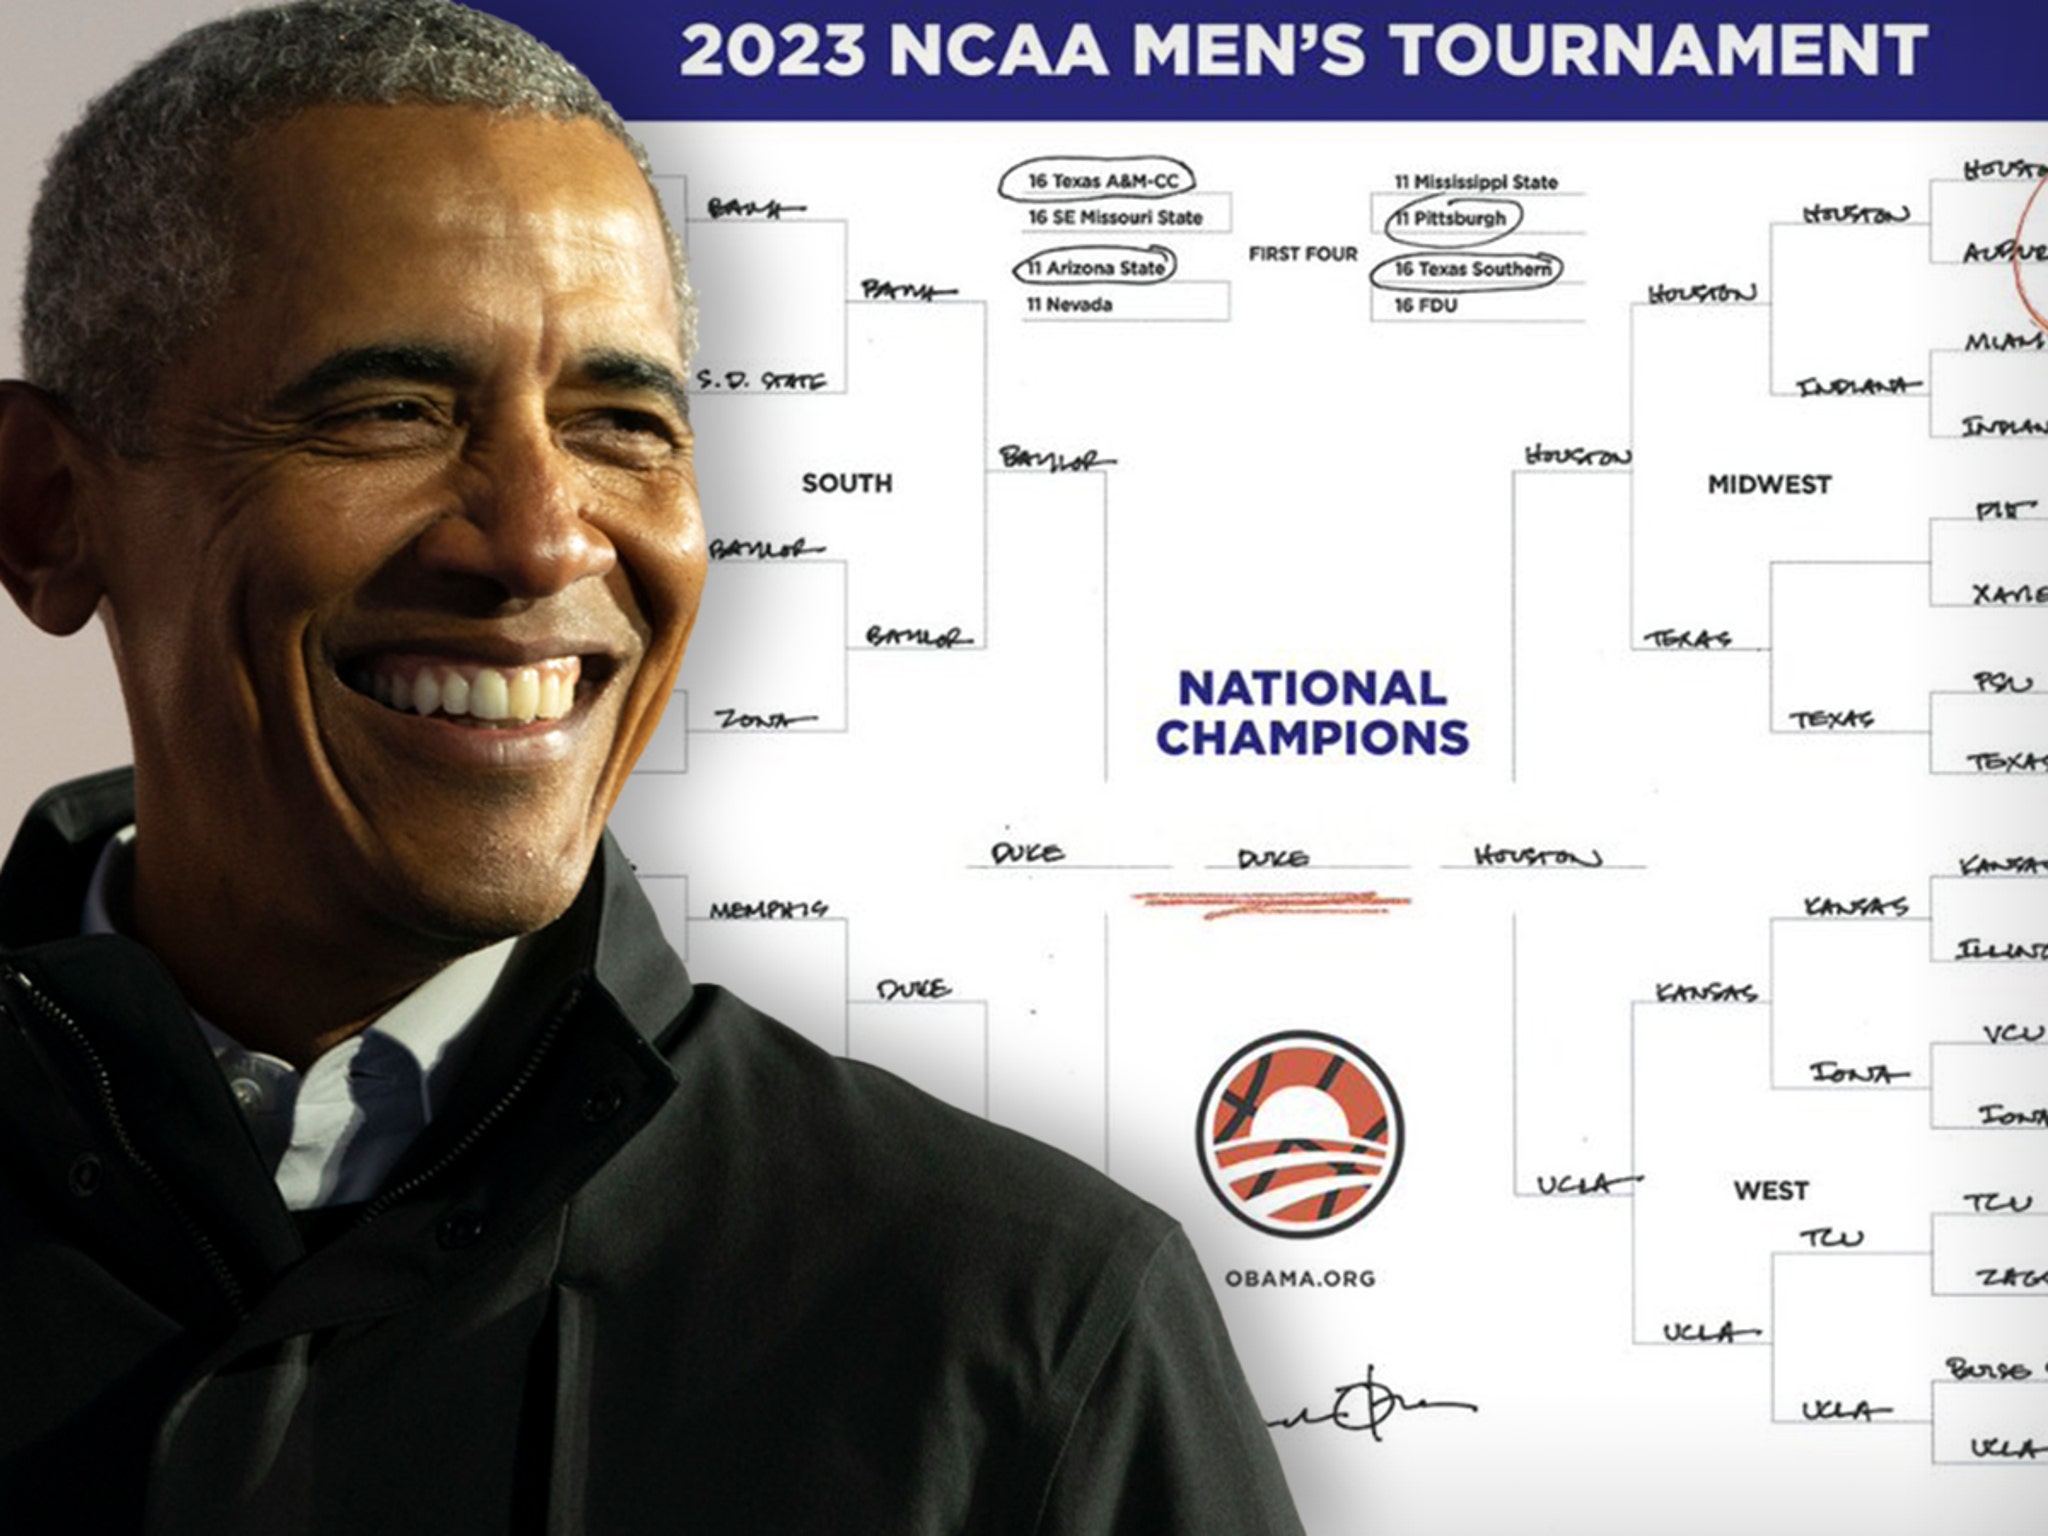 Obama picks Kansas, UConn to win NCAA tourneys – Orange County Register